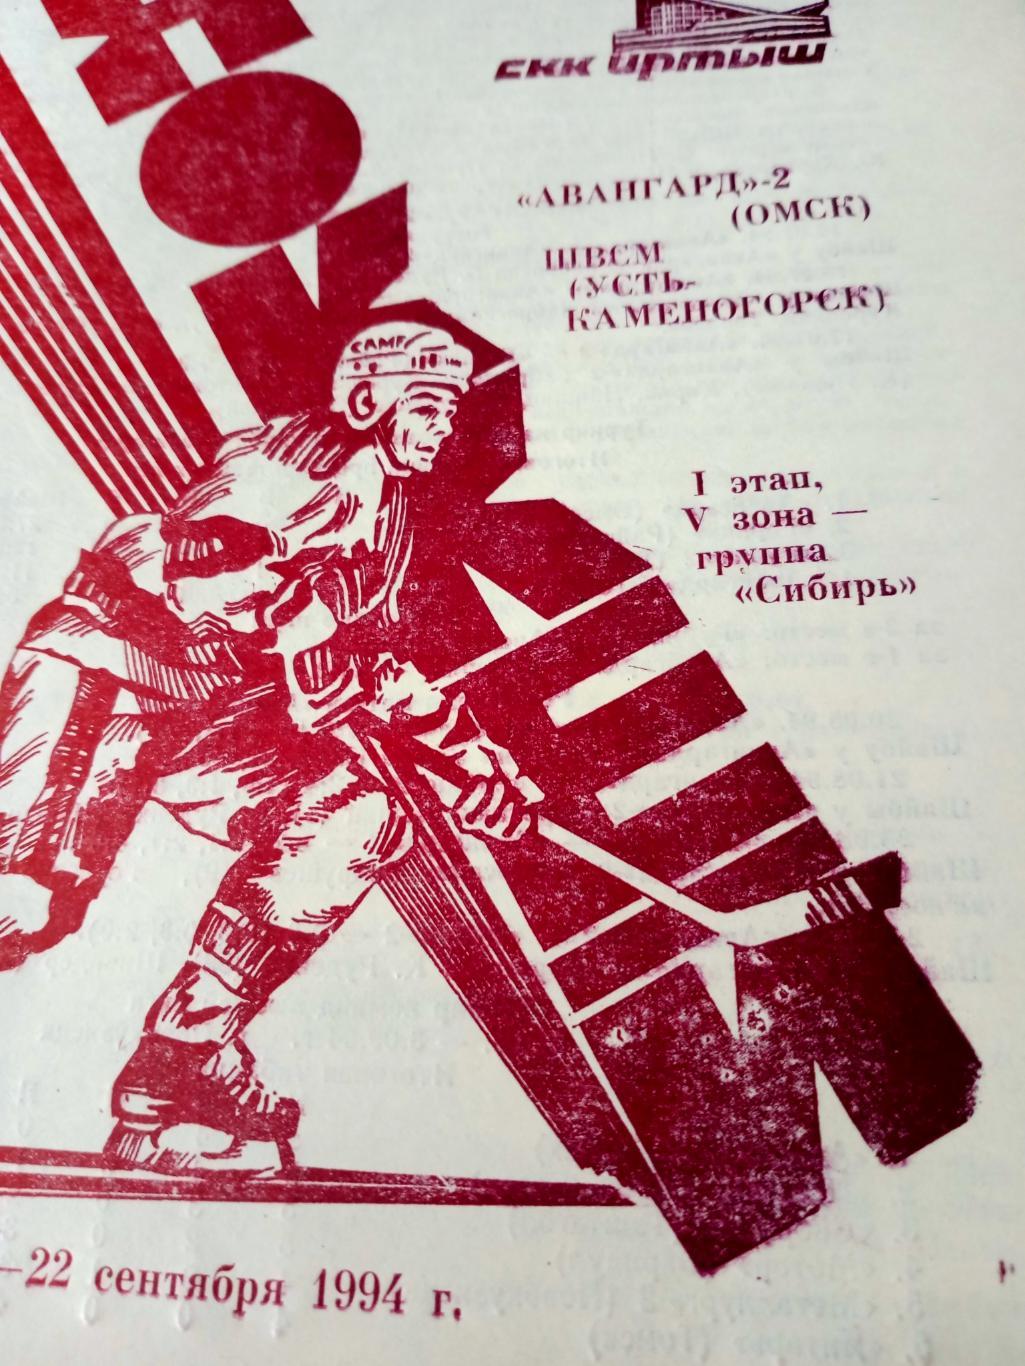 Авангард-2 Омск - ШВСМ Усть-Каменогорск. 21 и 22 сентября 1994 год